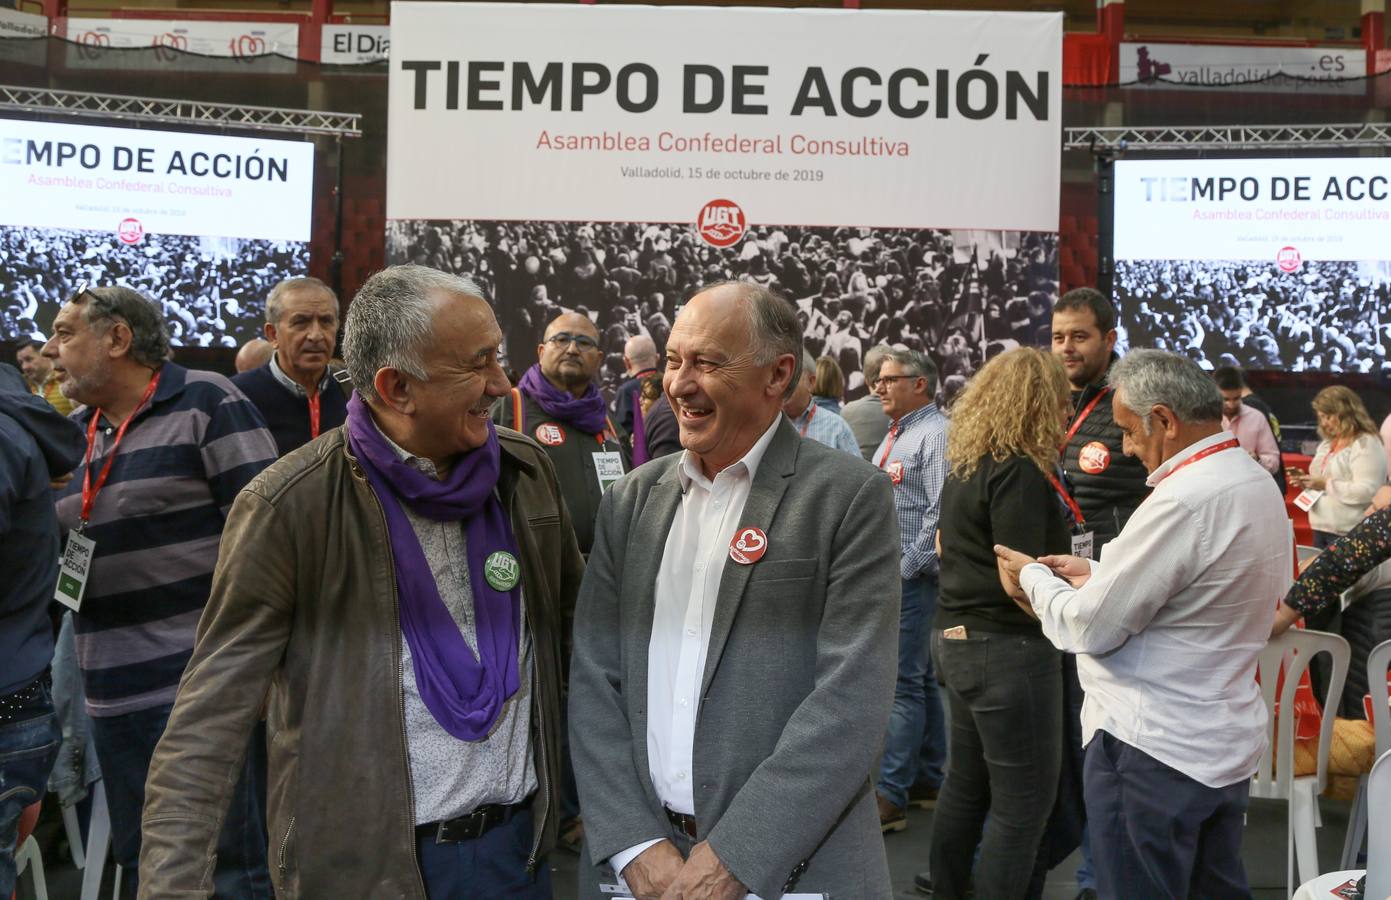 Asamblea Confederal Consultiva de UGT bajo el lema 'Tiempo de Acción'. Asisten, el secretario general de UGT, Pepe Álvarez, y el secretario general de UGT Castilla y León, Faustino Temprano.